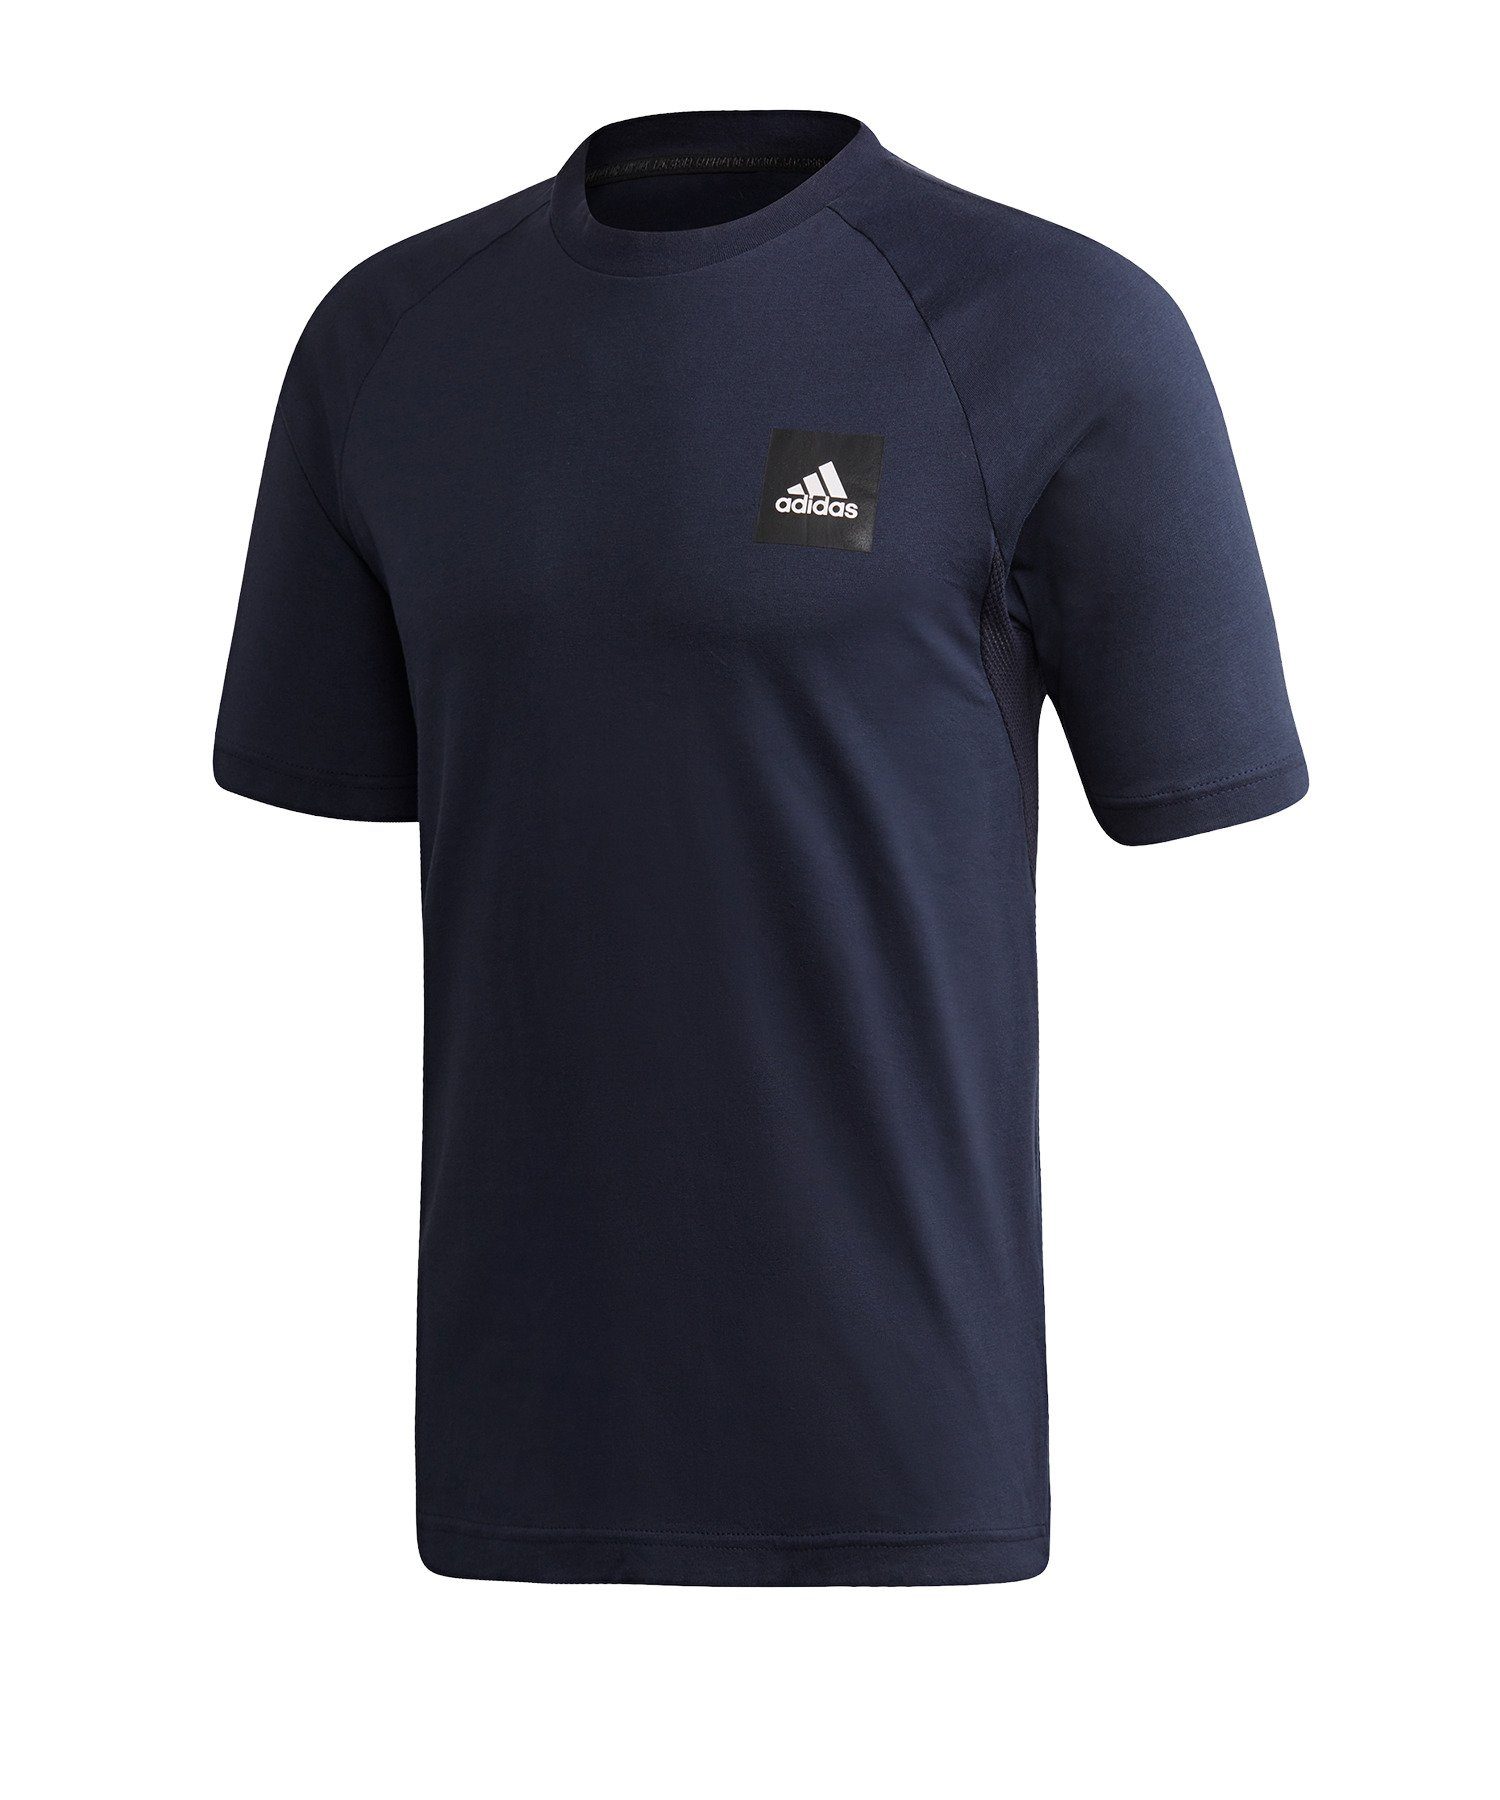 blauschwarz T-Shirt default Performance T-Shirt adidas MH